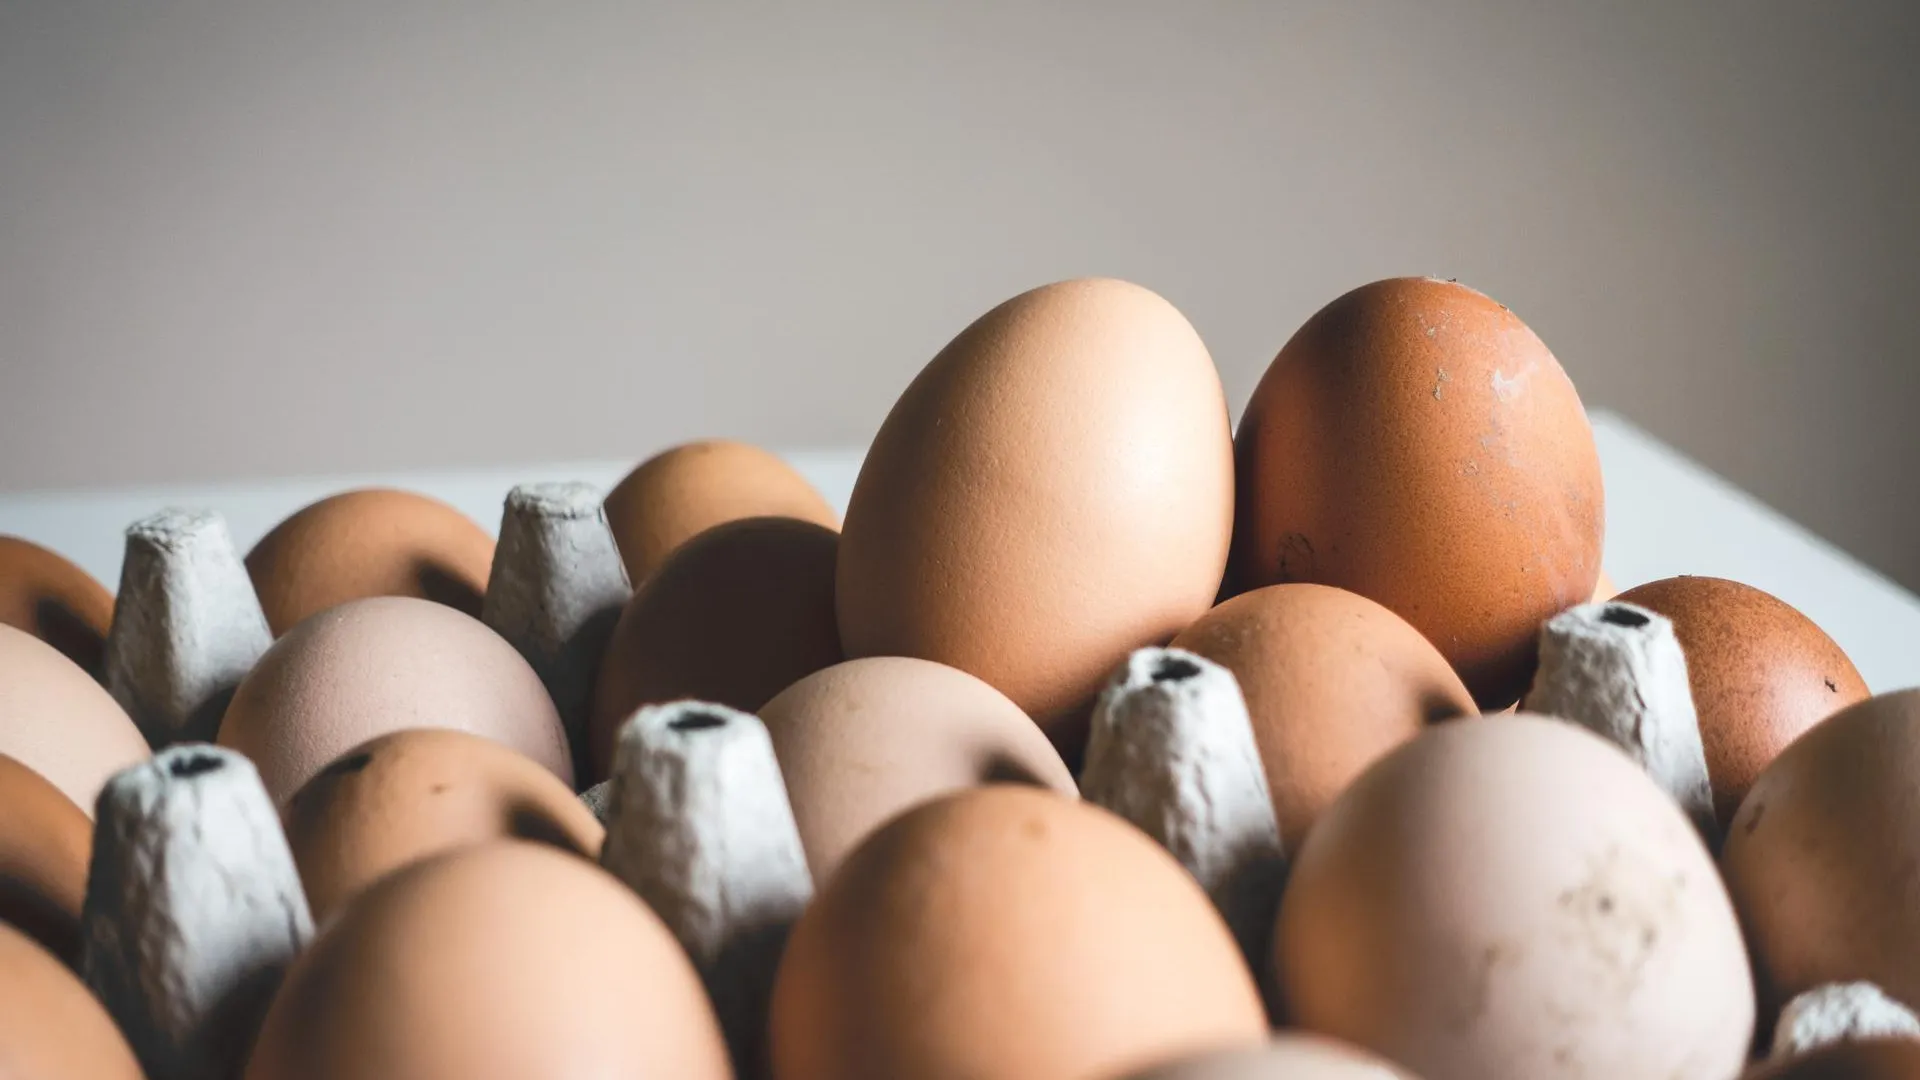 Прибыль 10 крупнейших производителей куриных яиц в России значительно выросла